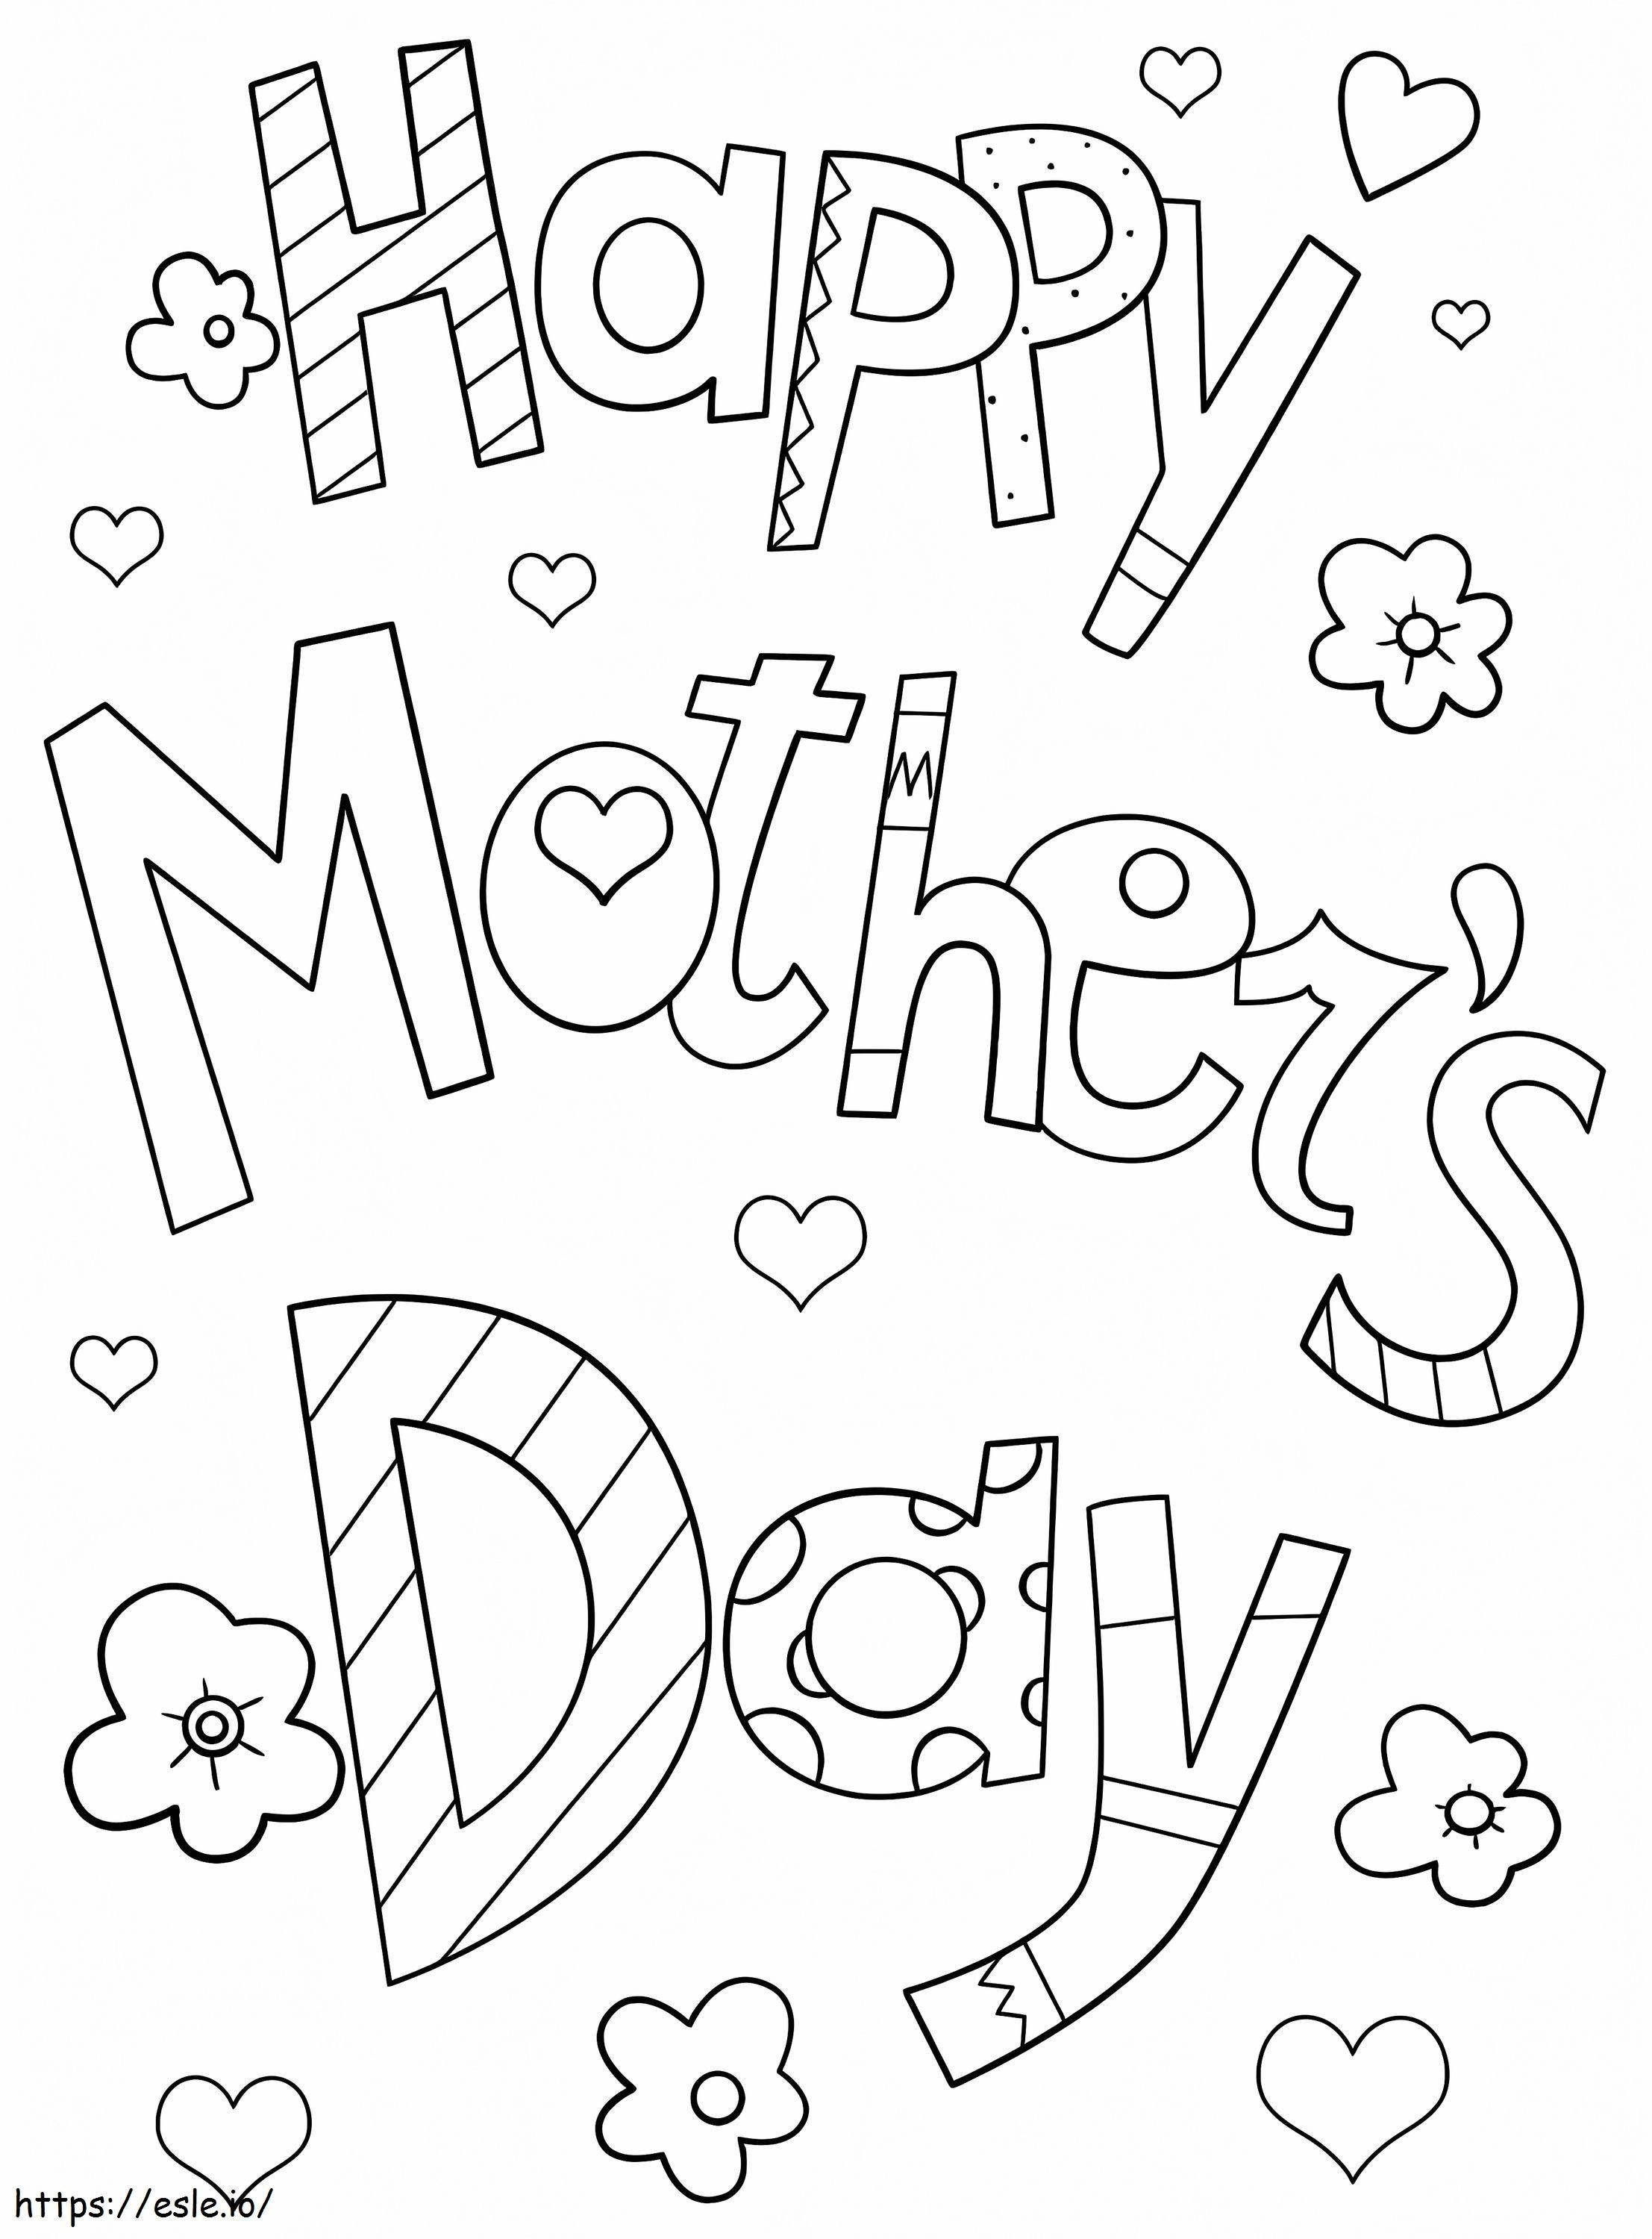 Szczęśliwego Dnia Matki 12 kolorowanka